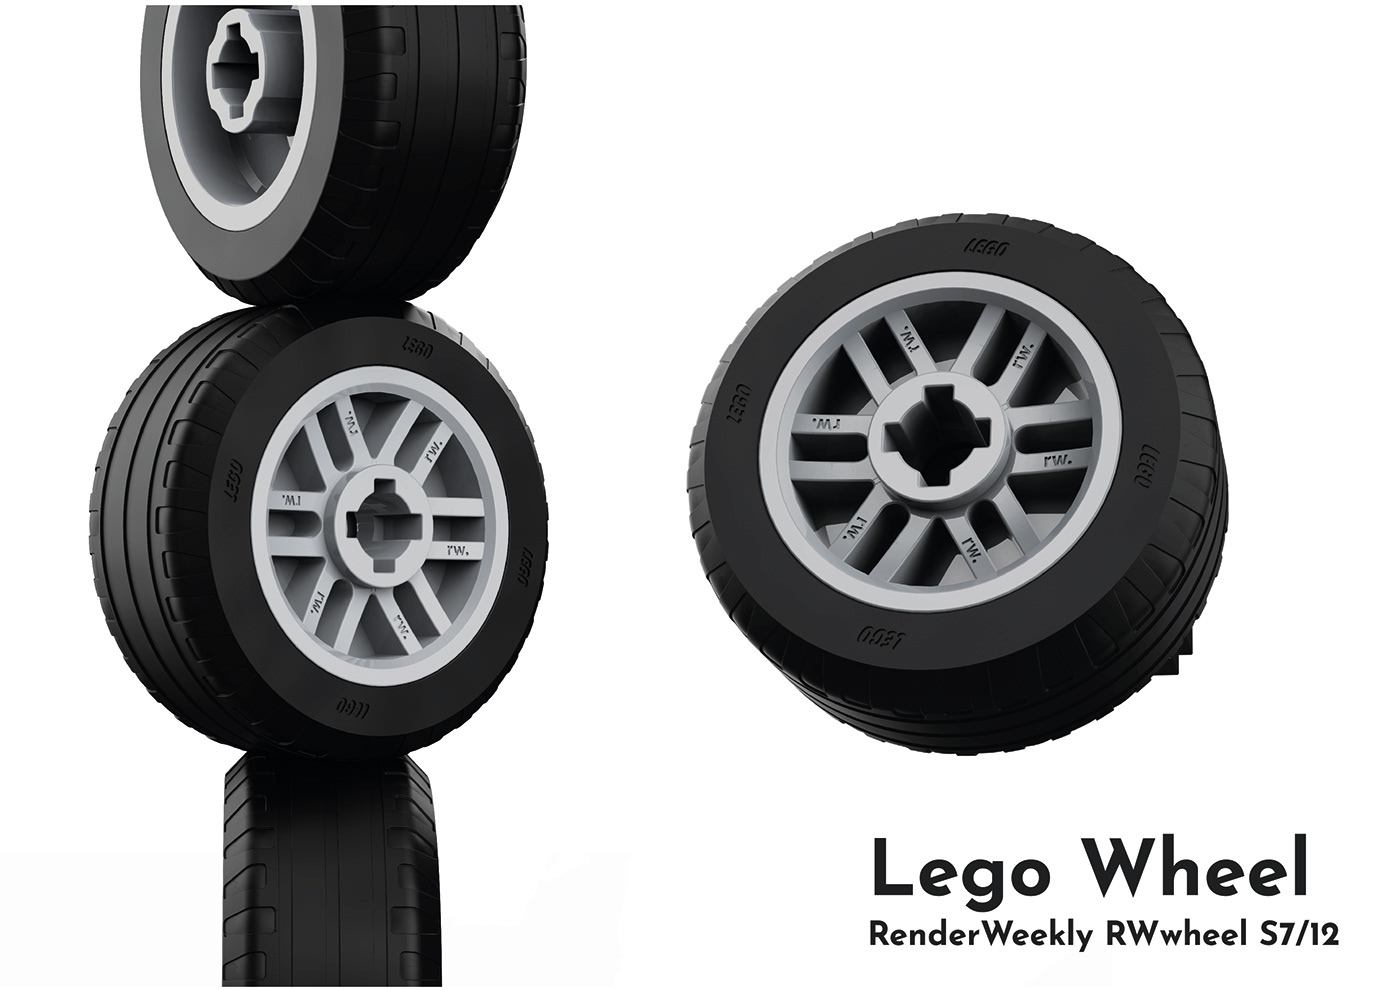 Render for renderweekly, industrial design, lego wheel, rendered with keyshot